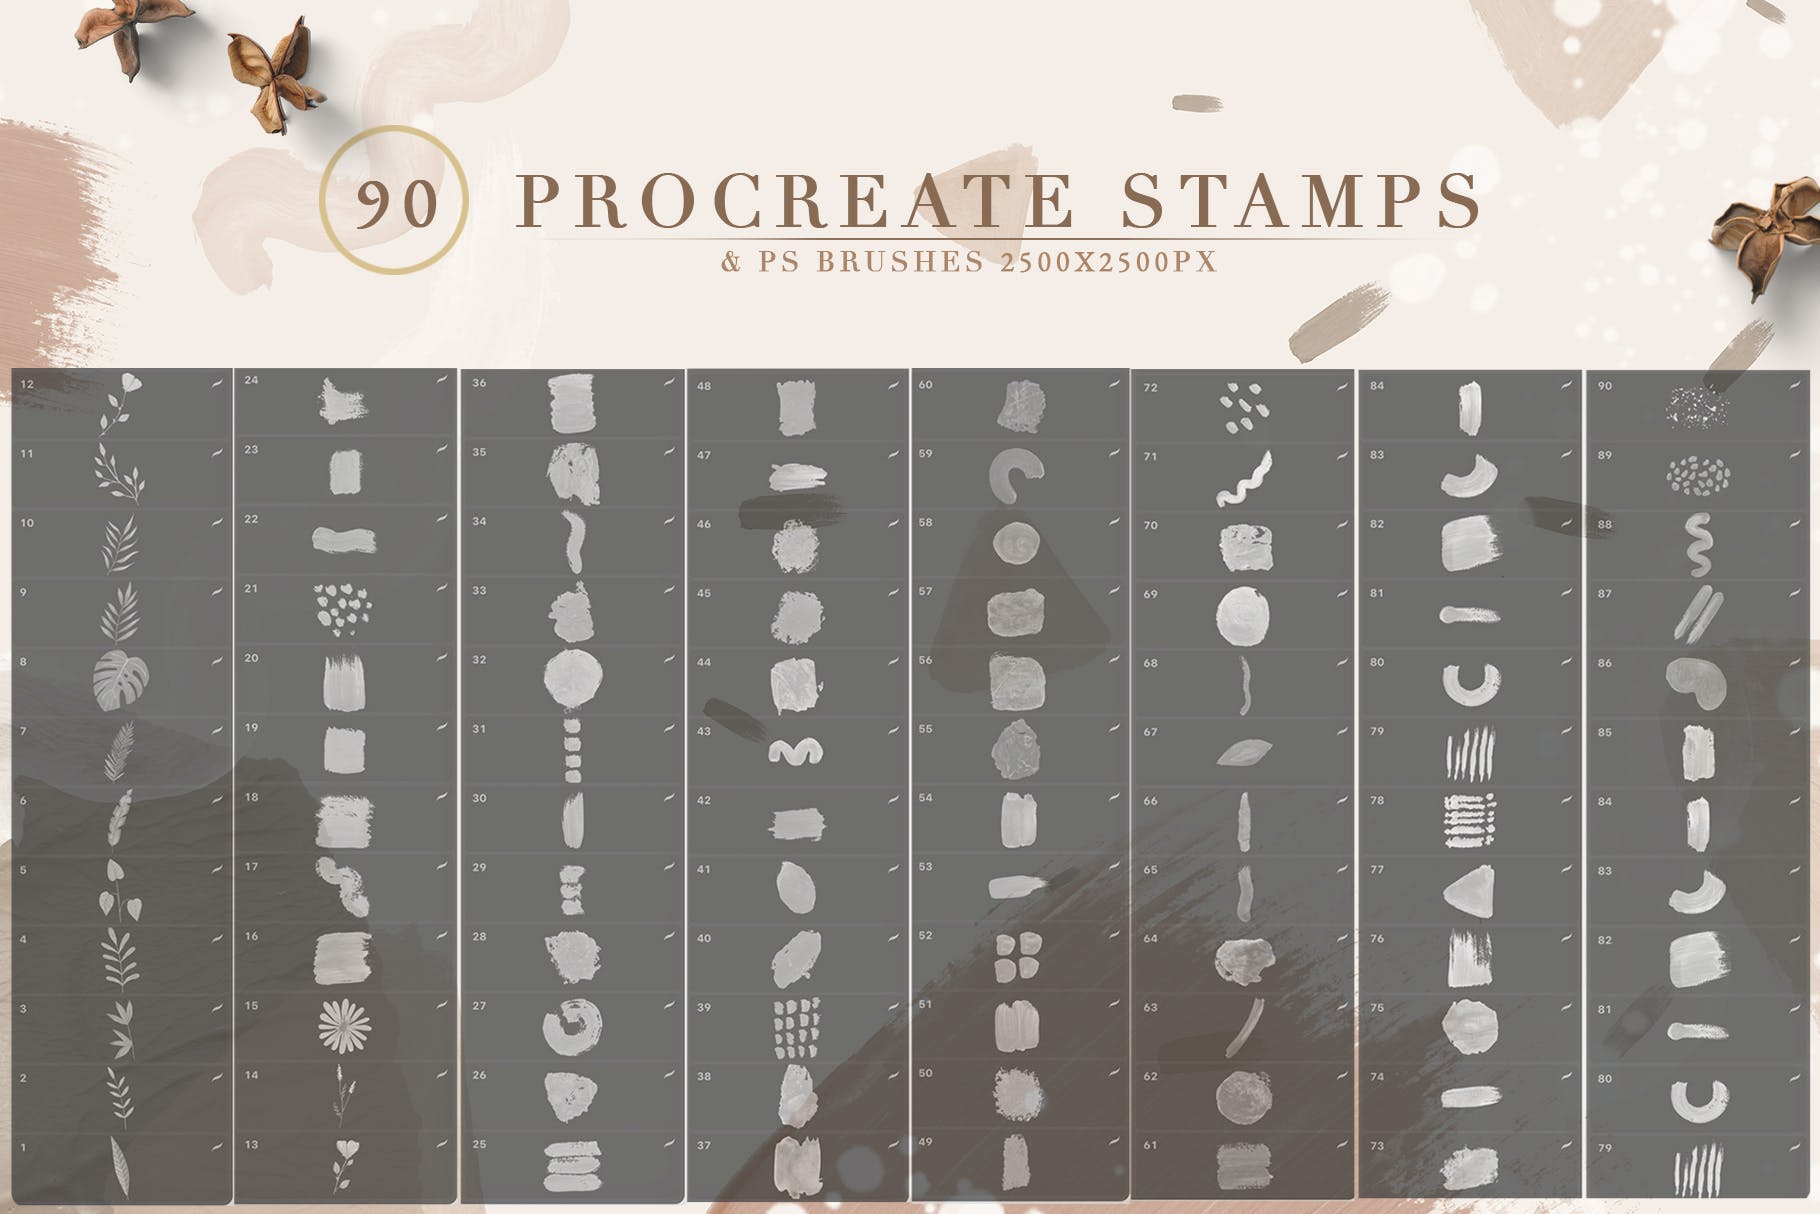 抽象画笔印章Procreate和ps笔刷 90 Procreate Stamps&Photoshop Brushes 笔刷资源 第2张